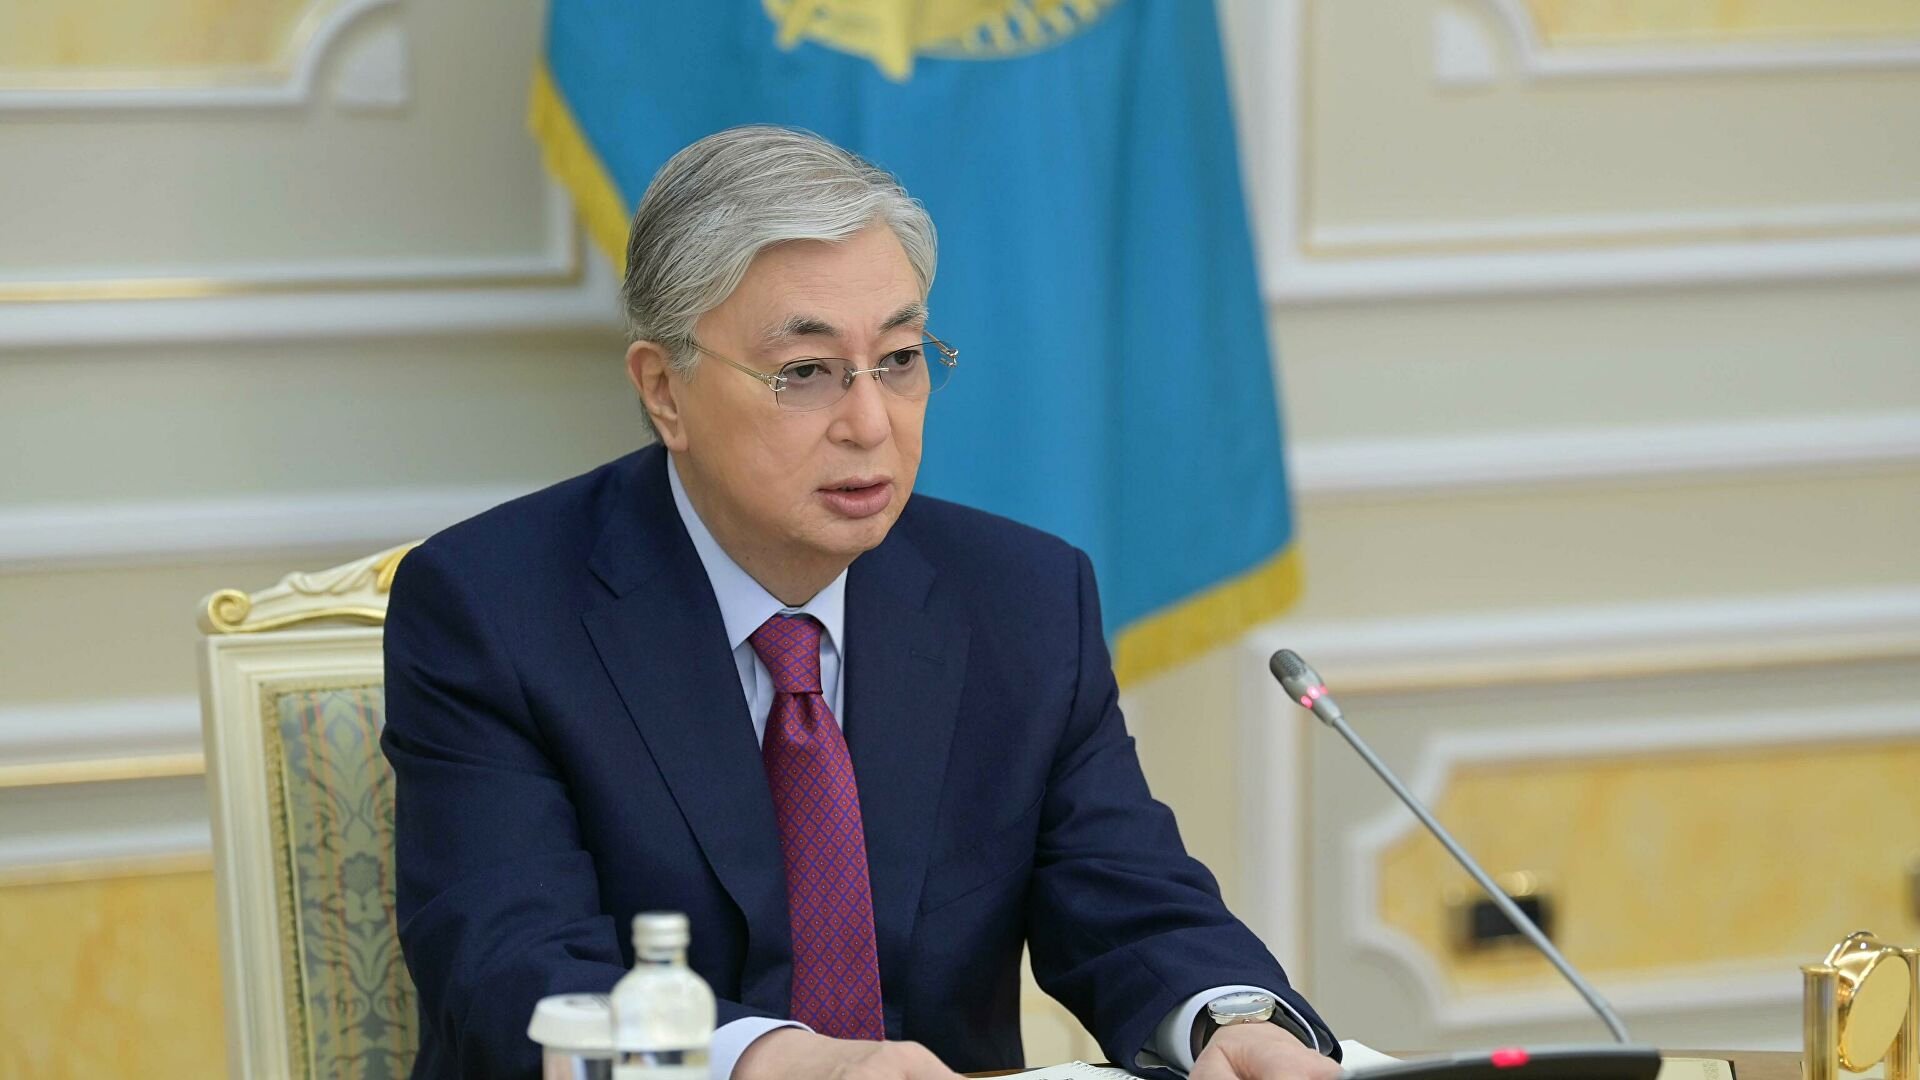 Ղազախստանի նախագահը չեղարկել է Նուր-Սուլթանում արտակարգ դրությունը